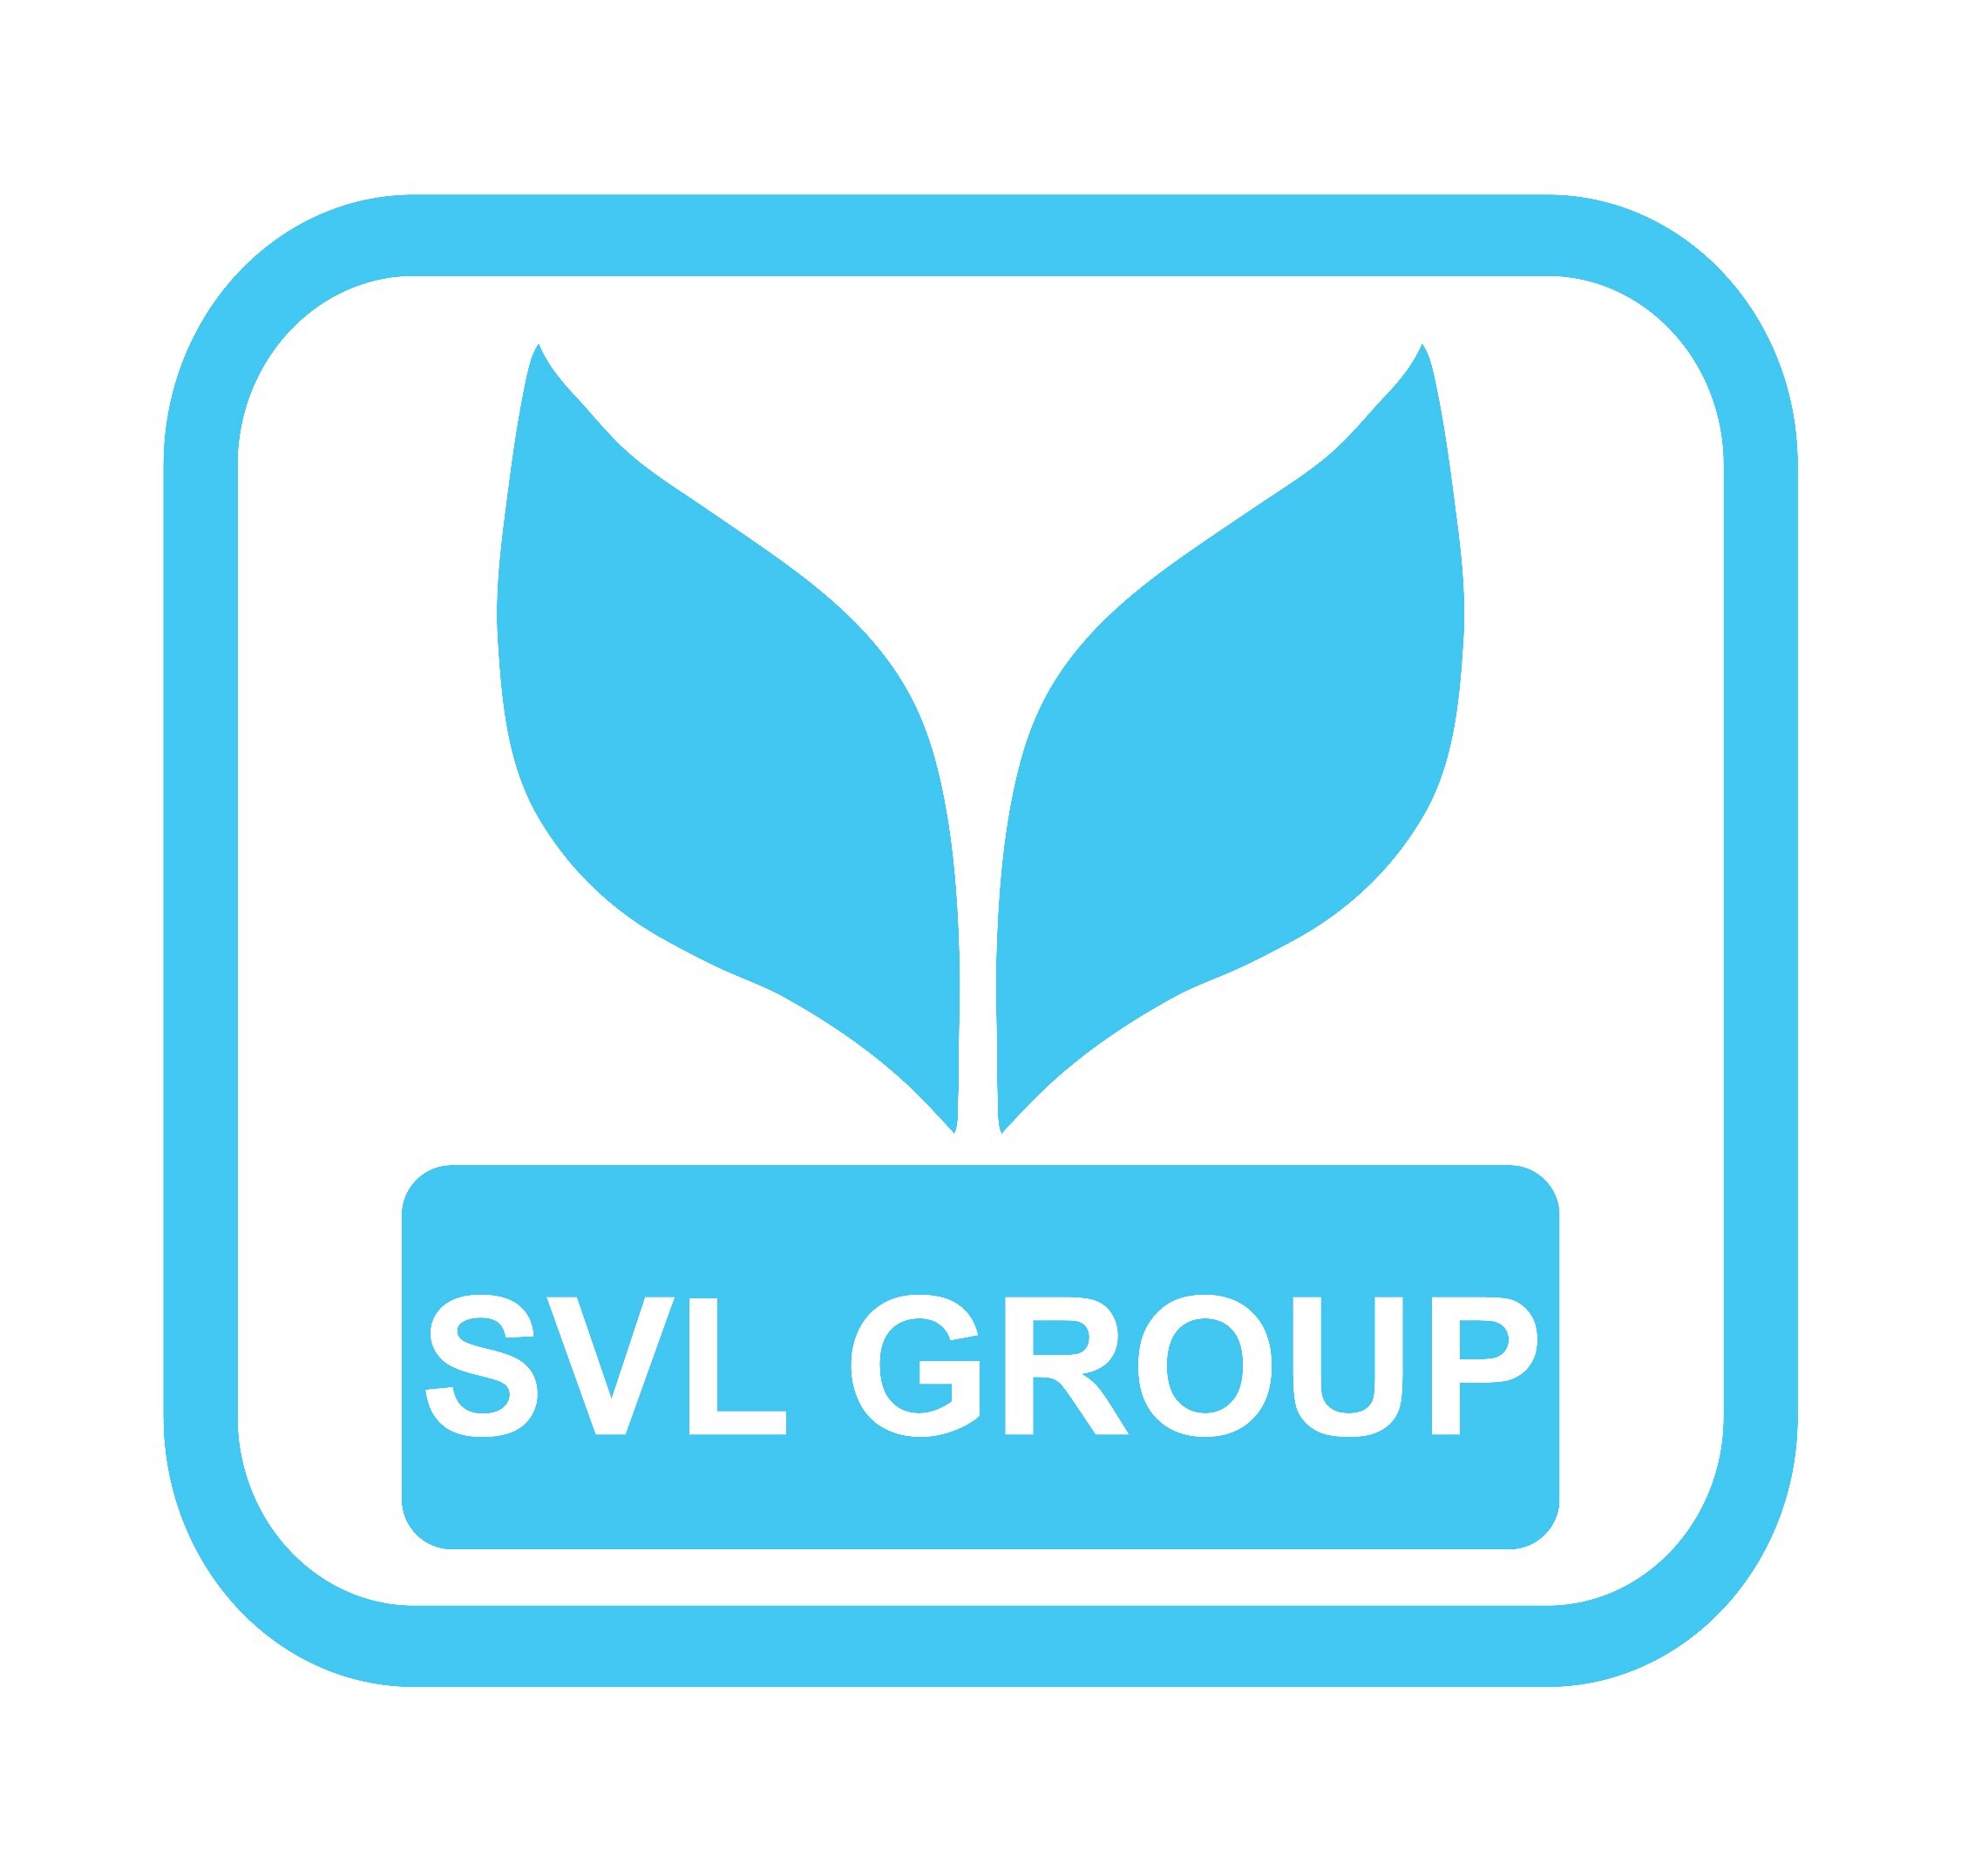 เอสวีแอล กรุ๊ป (SVL Group) ร่วมเสวนาในงาน 10 พฤษภาคม วันความปลอดภัยในการทำงานแห่งชาติและเวทีแลกเปลี่ยนเรียนรู้ จป. ผู้นำการสร้างสุขภาวะองค์กร